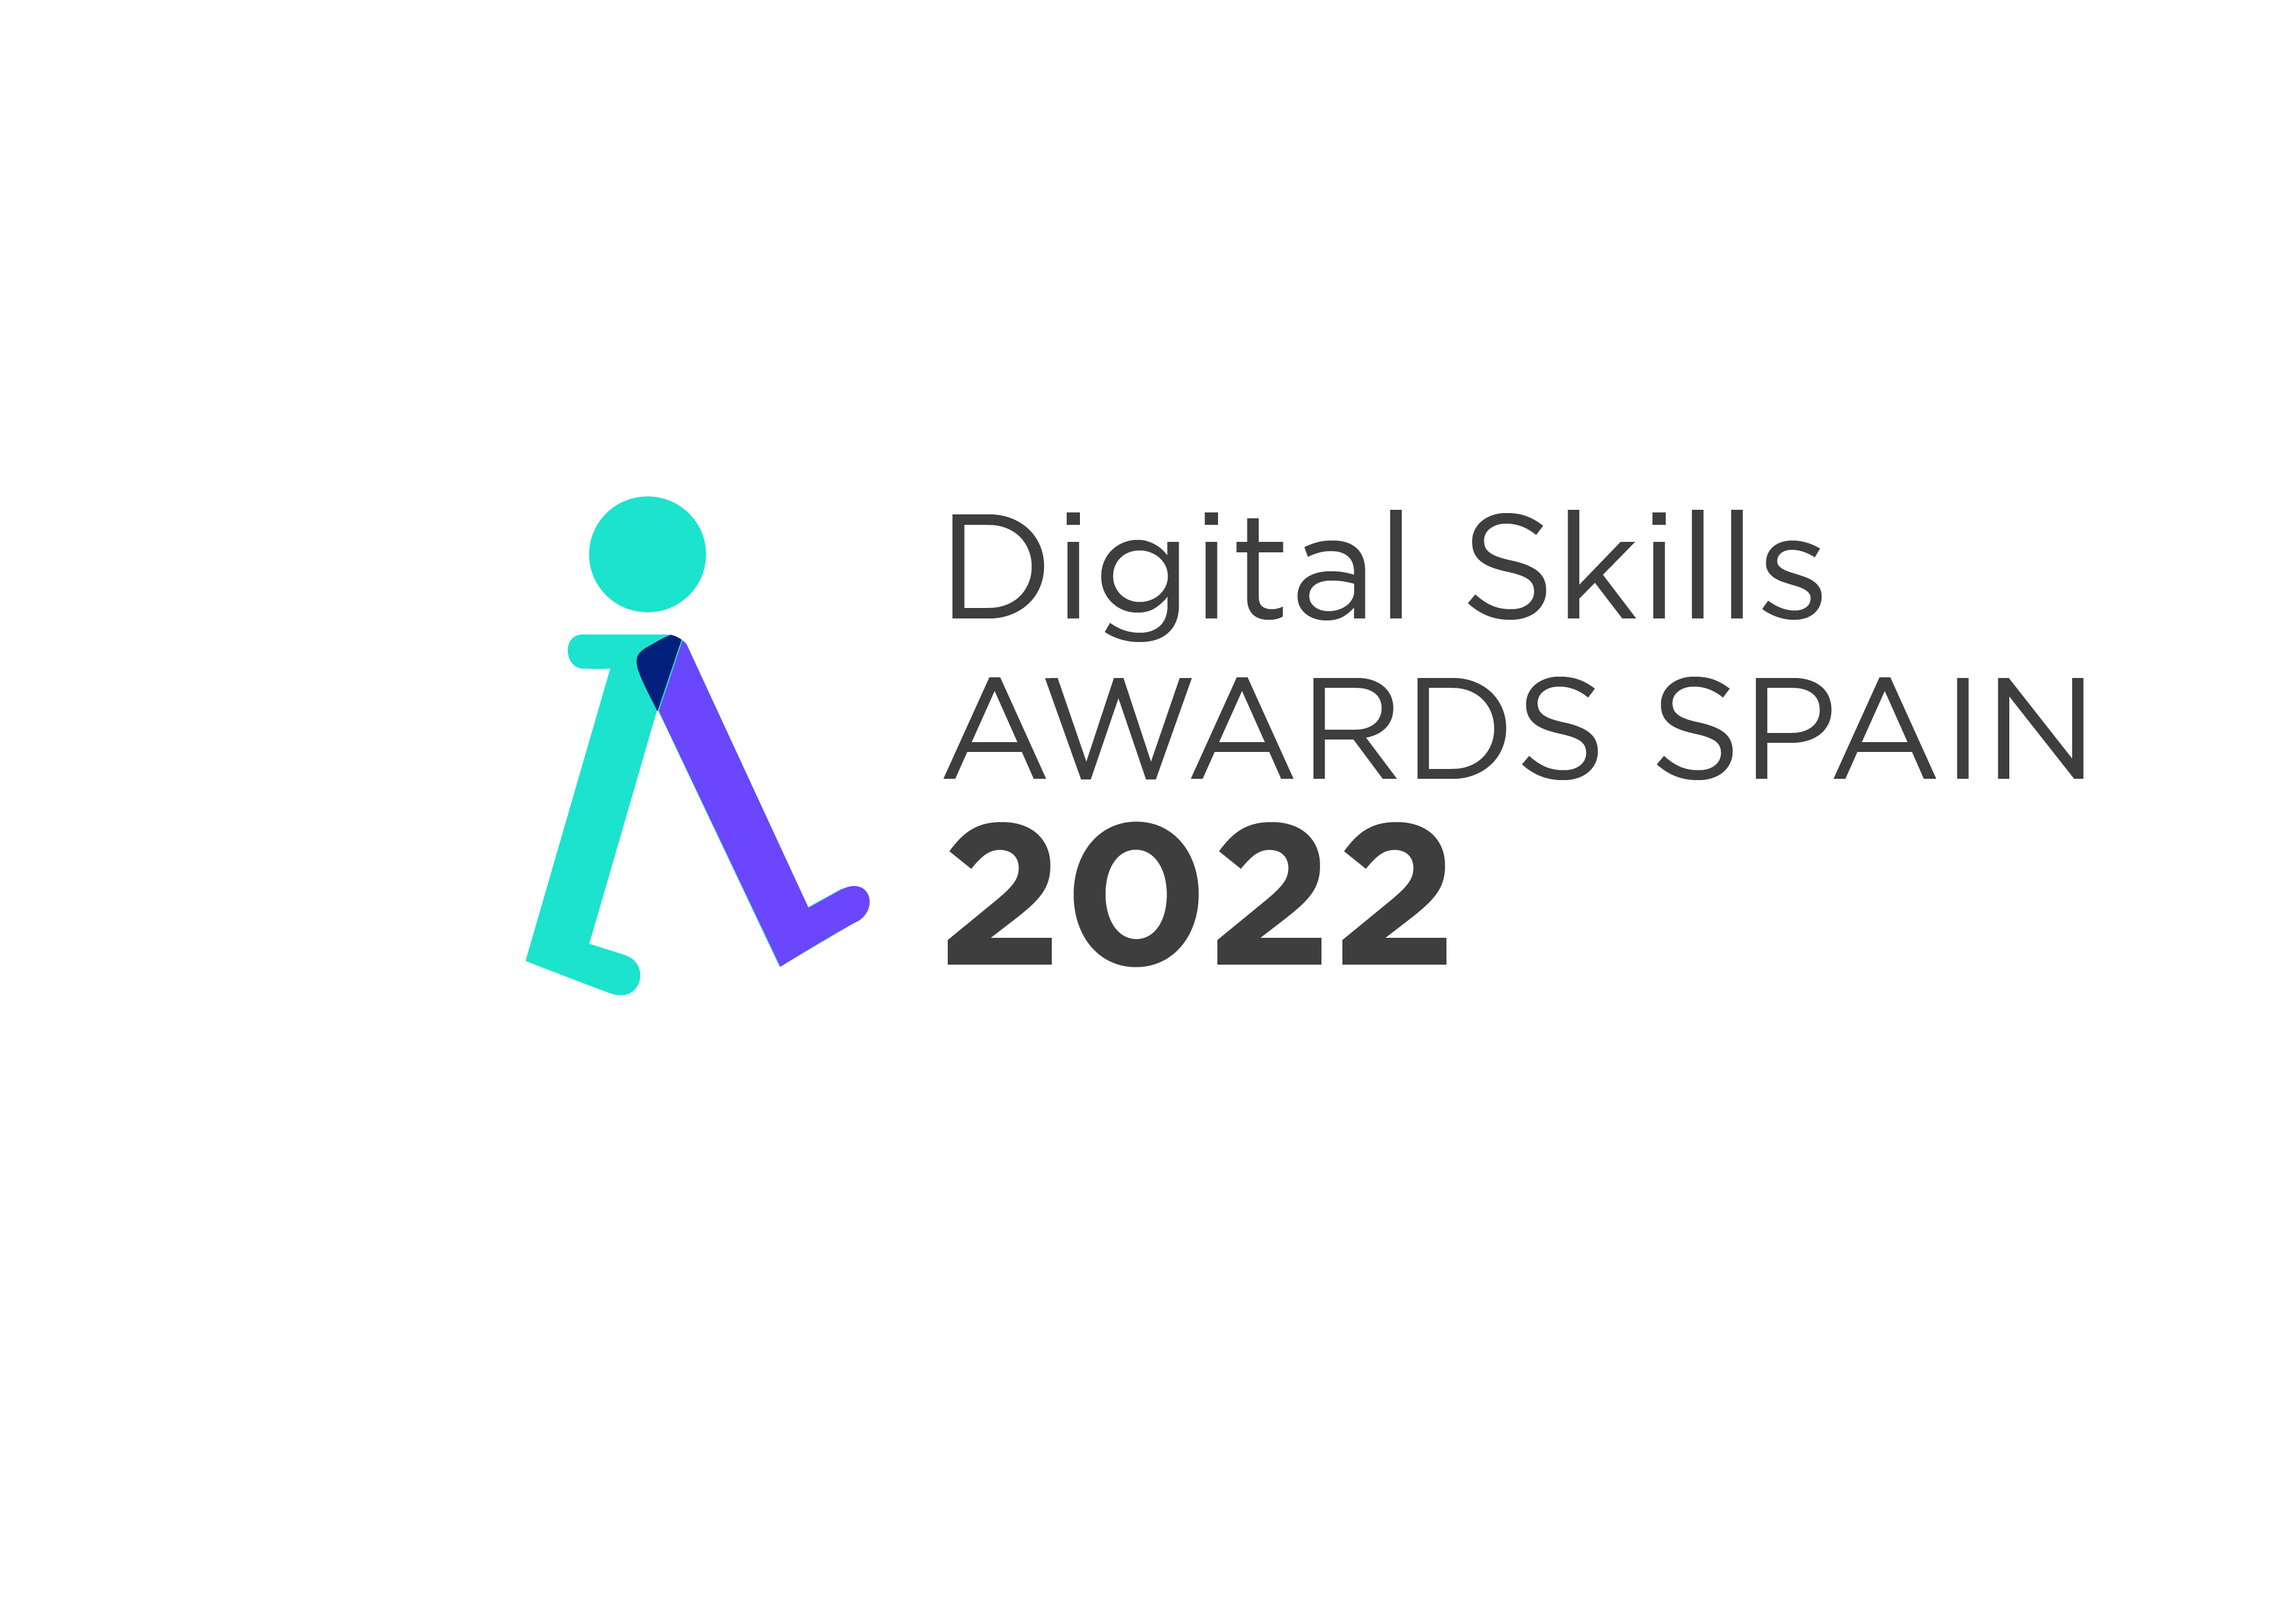 Digital Skills Awards 2022